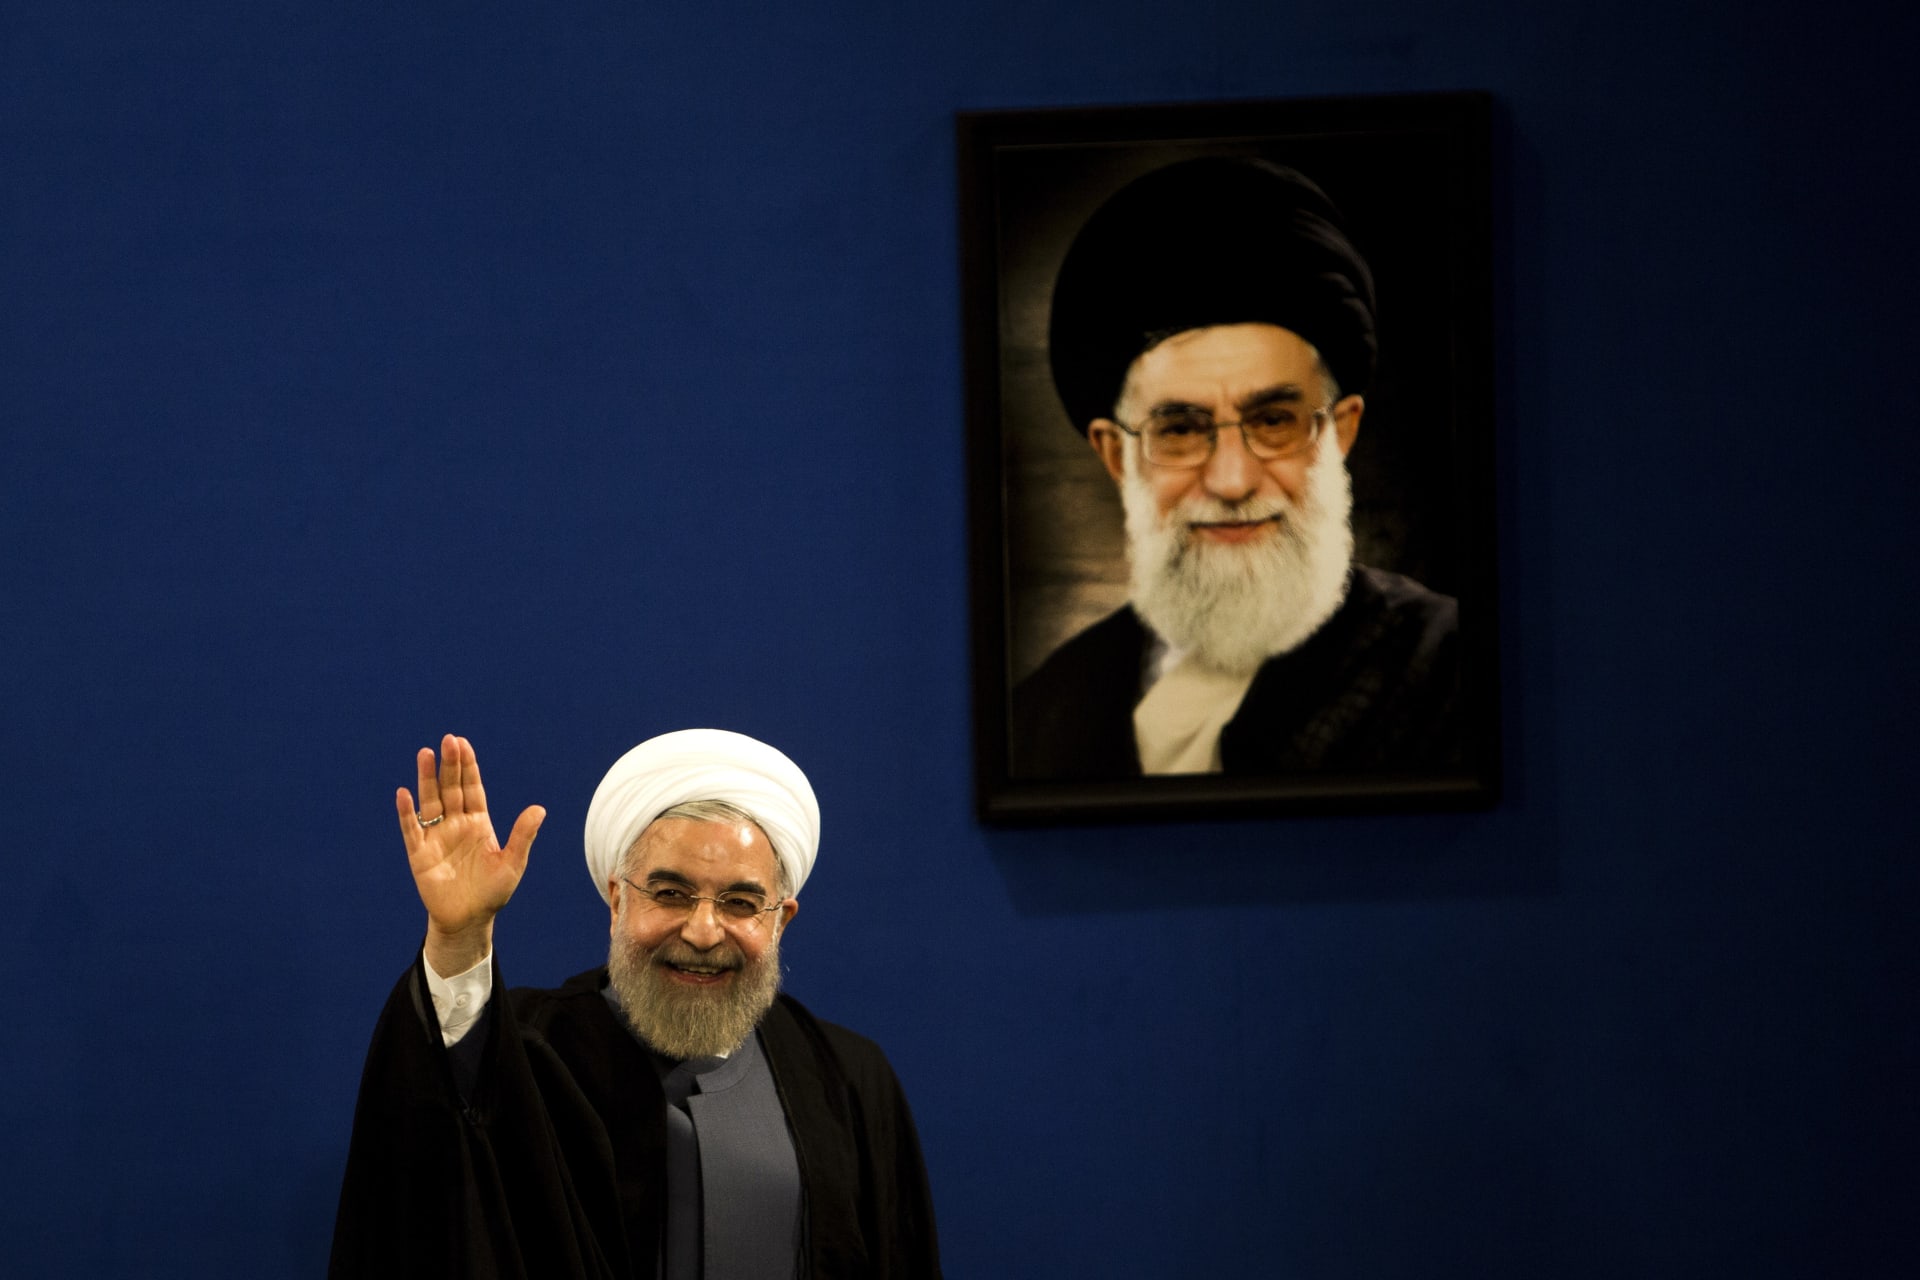 المعارضة الإيرانية: فوز روحاني "هزيمة نكراء" لخامنئي ومؤشر لـ"نهاية ولاية الفقيه"